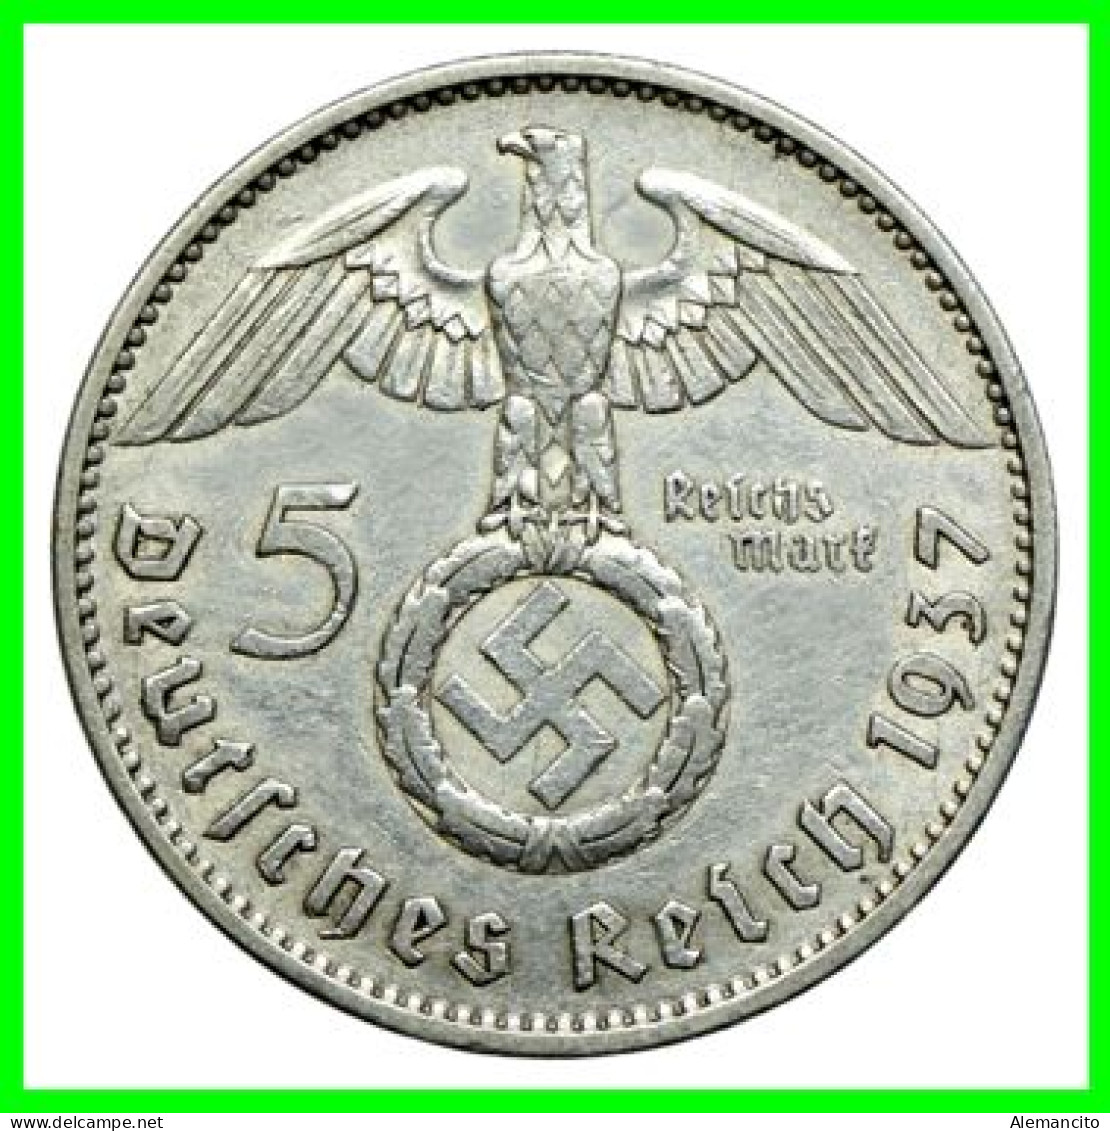 GERMANY - ALEMANIA DEUTFCHES REICH SERIE DE 6 MONEDAS DE 5.00 REICHSMARK AÑO 1937 MONEDAS DE PLATA - 29 MM.  HINDENBURG - 2 Reichsmark